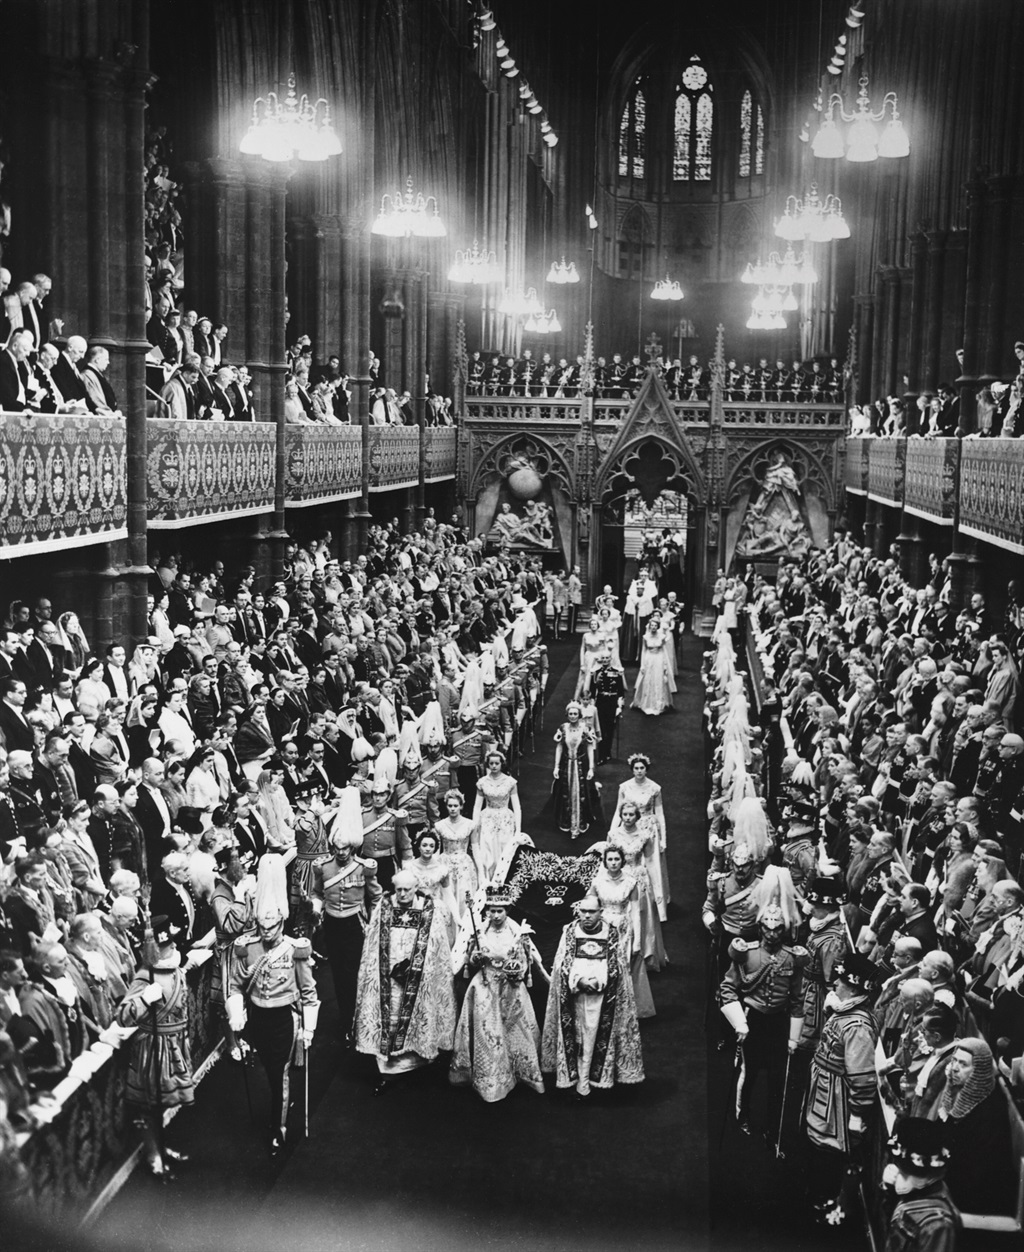 Queen Elizabeth II walks down the nave of Westminster